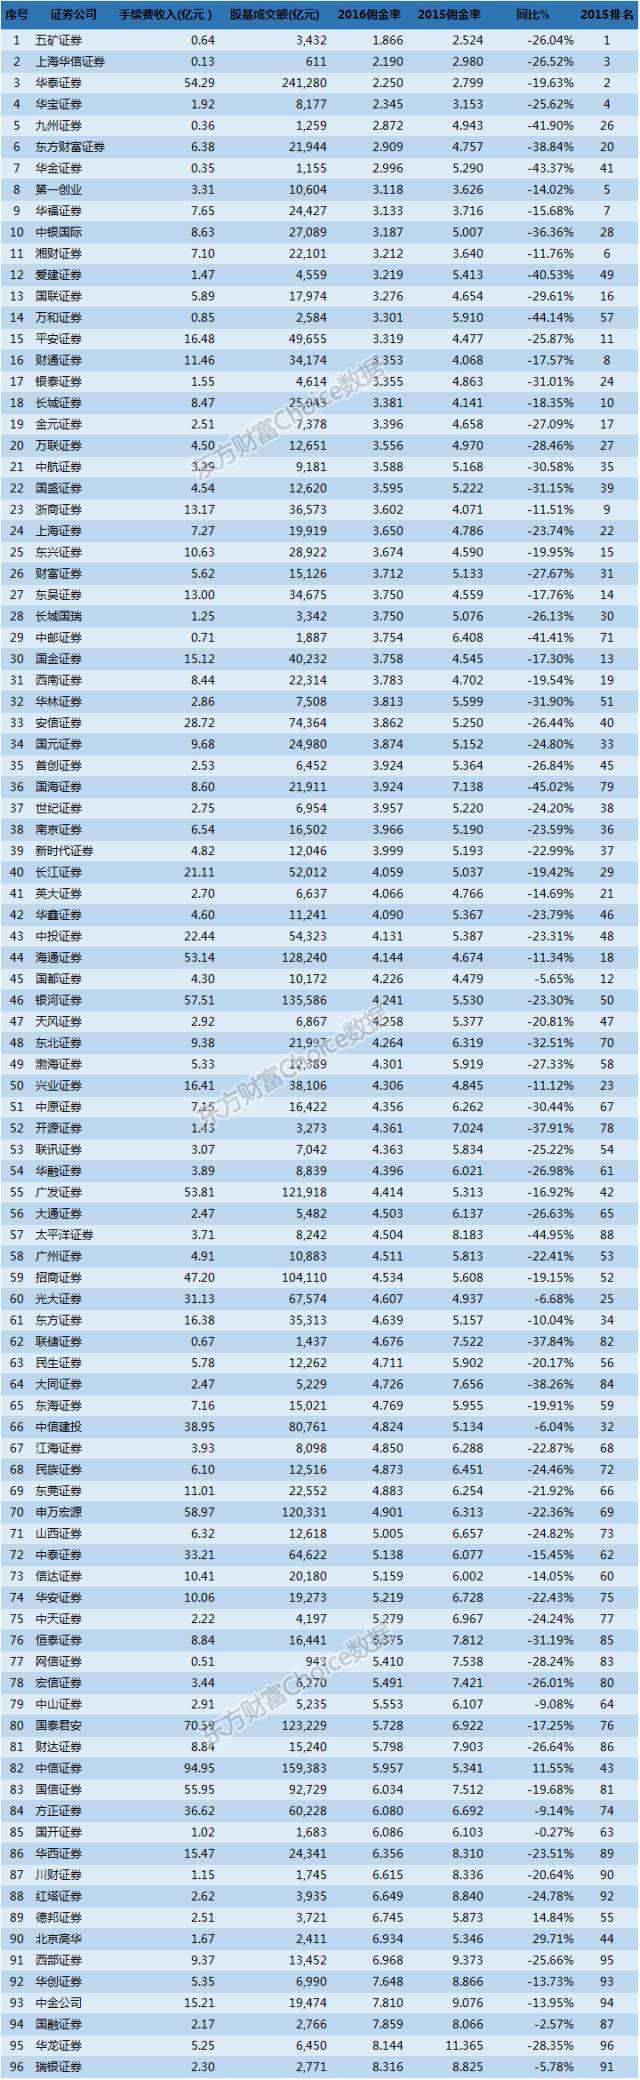 2016年中国百大券商佣金率排行榜：五矿证券1.86最低，瑞银证券高达8.3